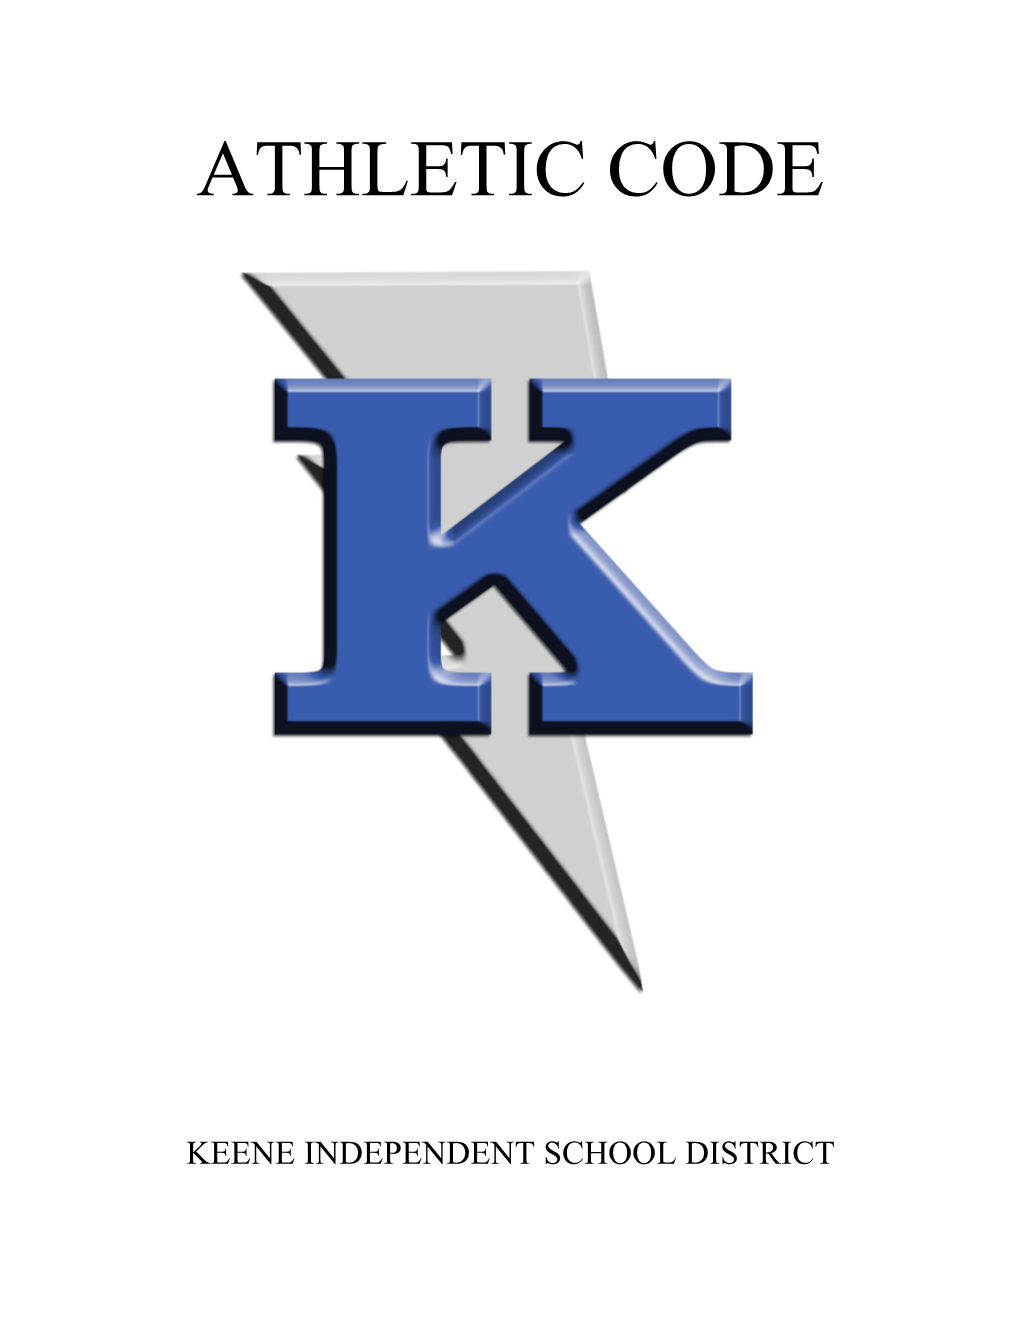 Keene Independent School District